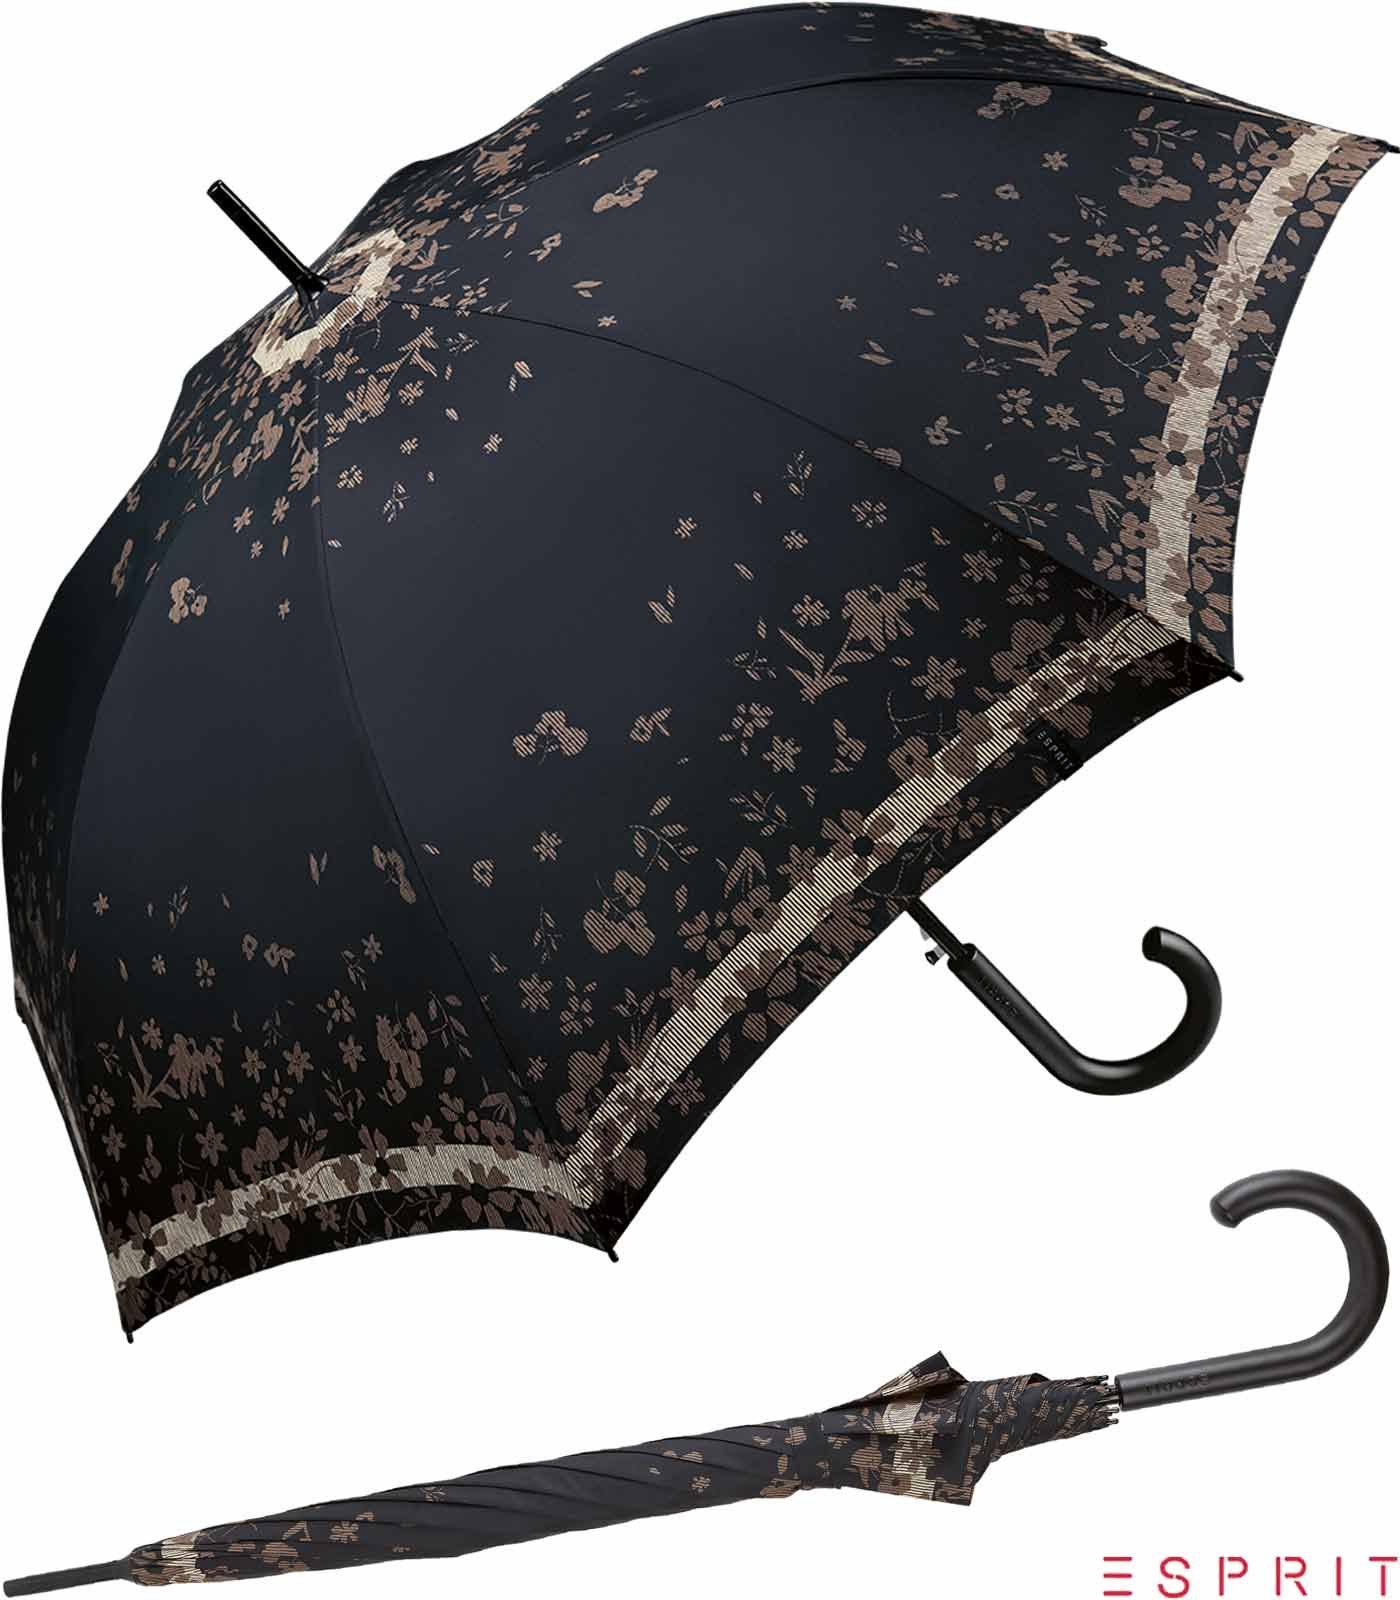 Esprit Langregenschirm Damen mit Auf-Automatik Poetry Flower - black, groß, stabil, mit Blumenmuster